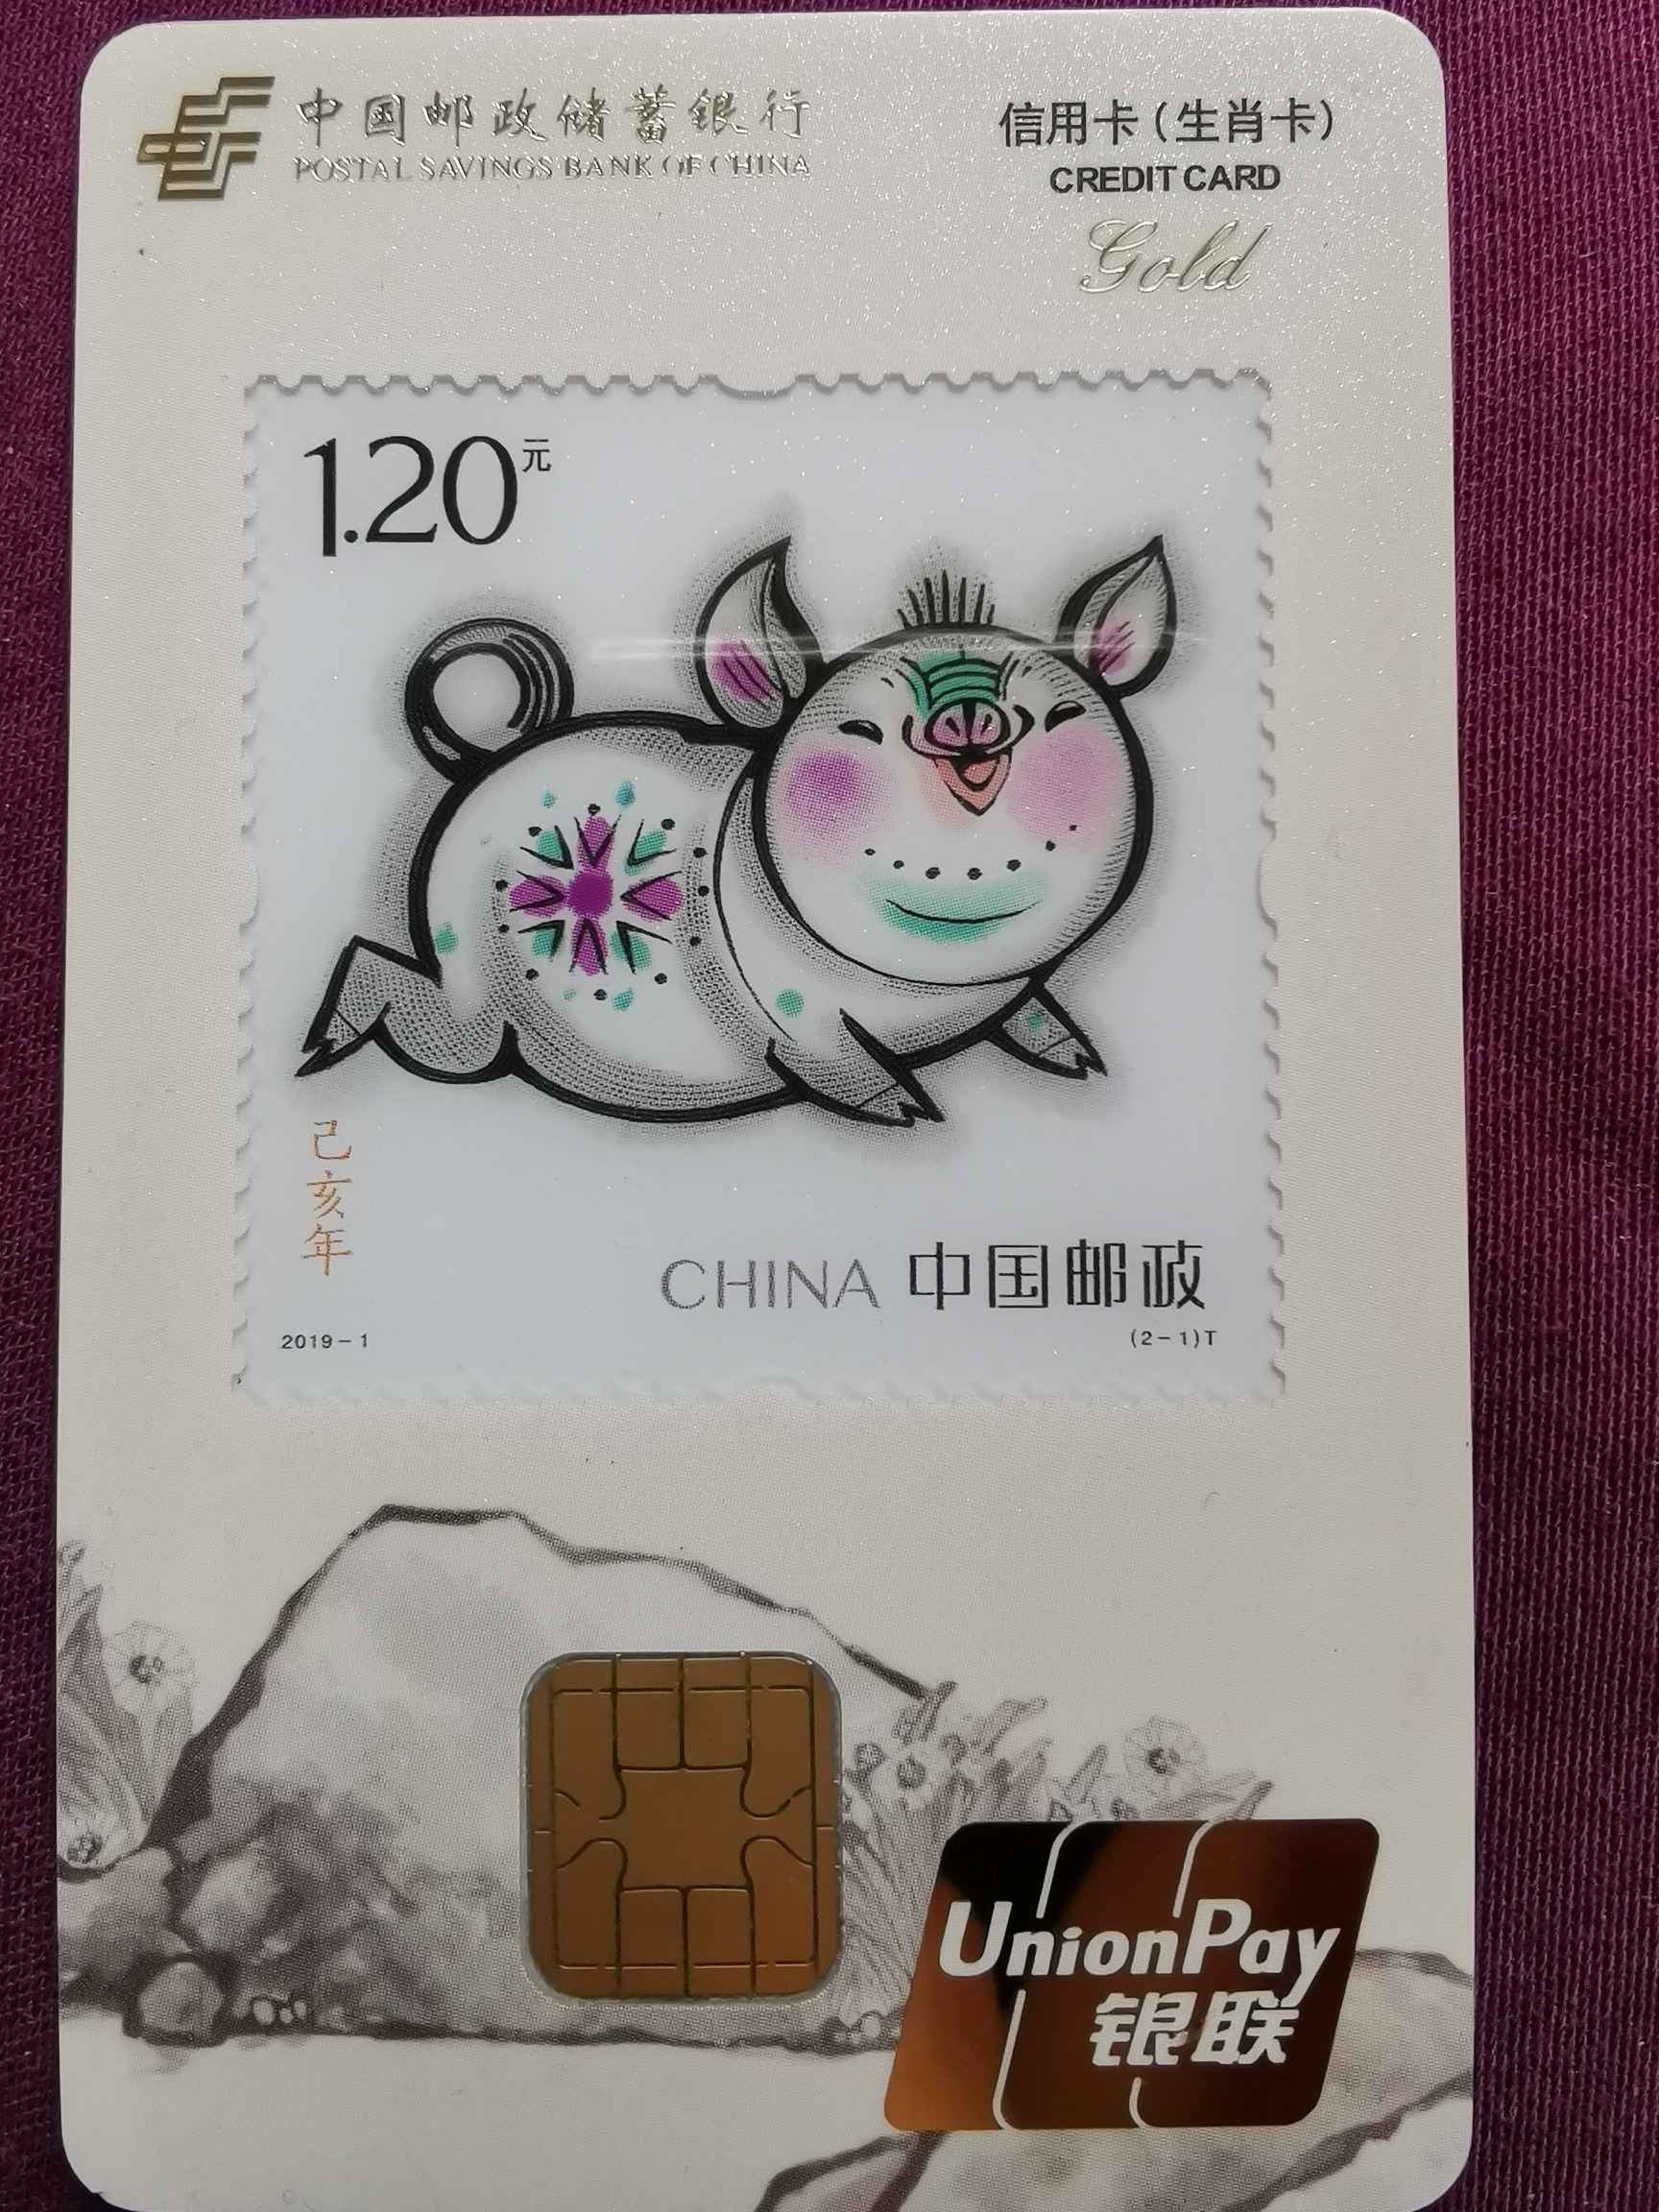 中国邮储的猪卡可以直接靓卡面的卡